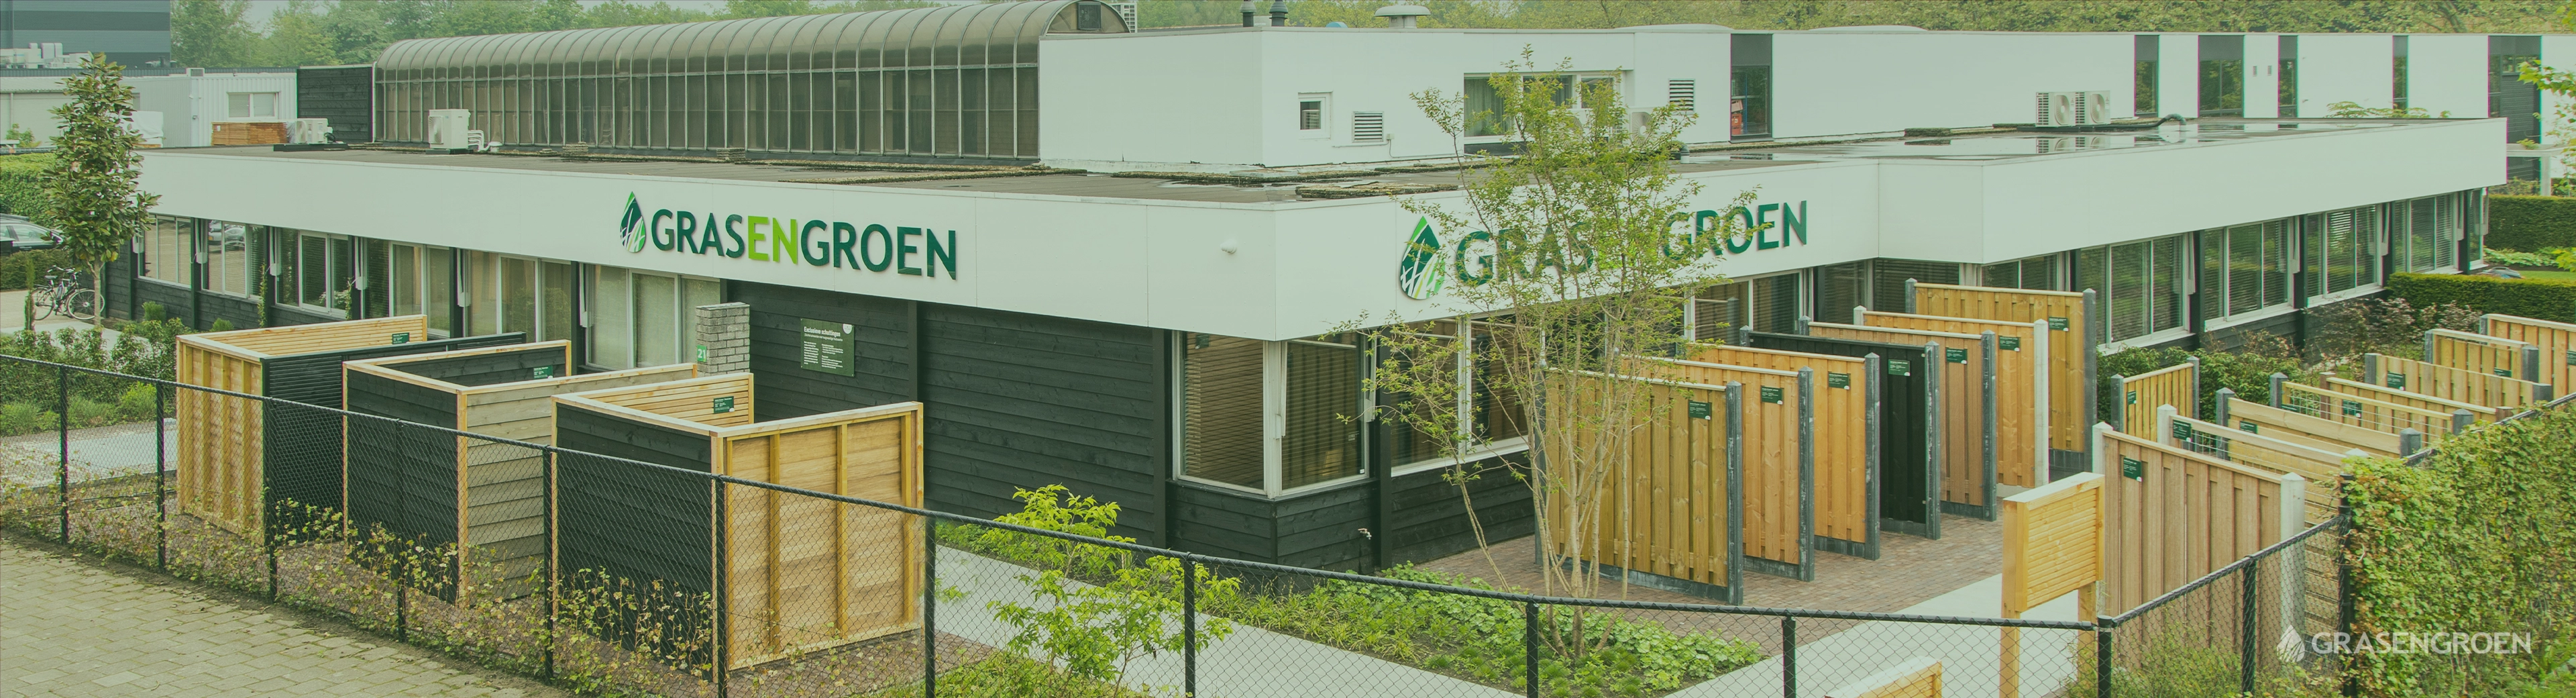 Werkenbijgrasengroenhome • Gras en Groen website